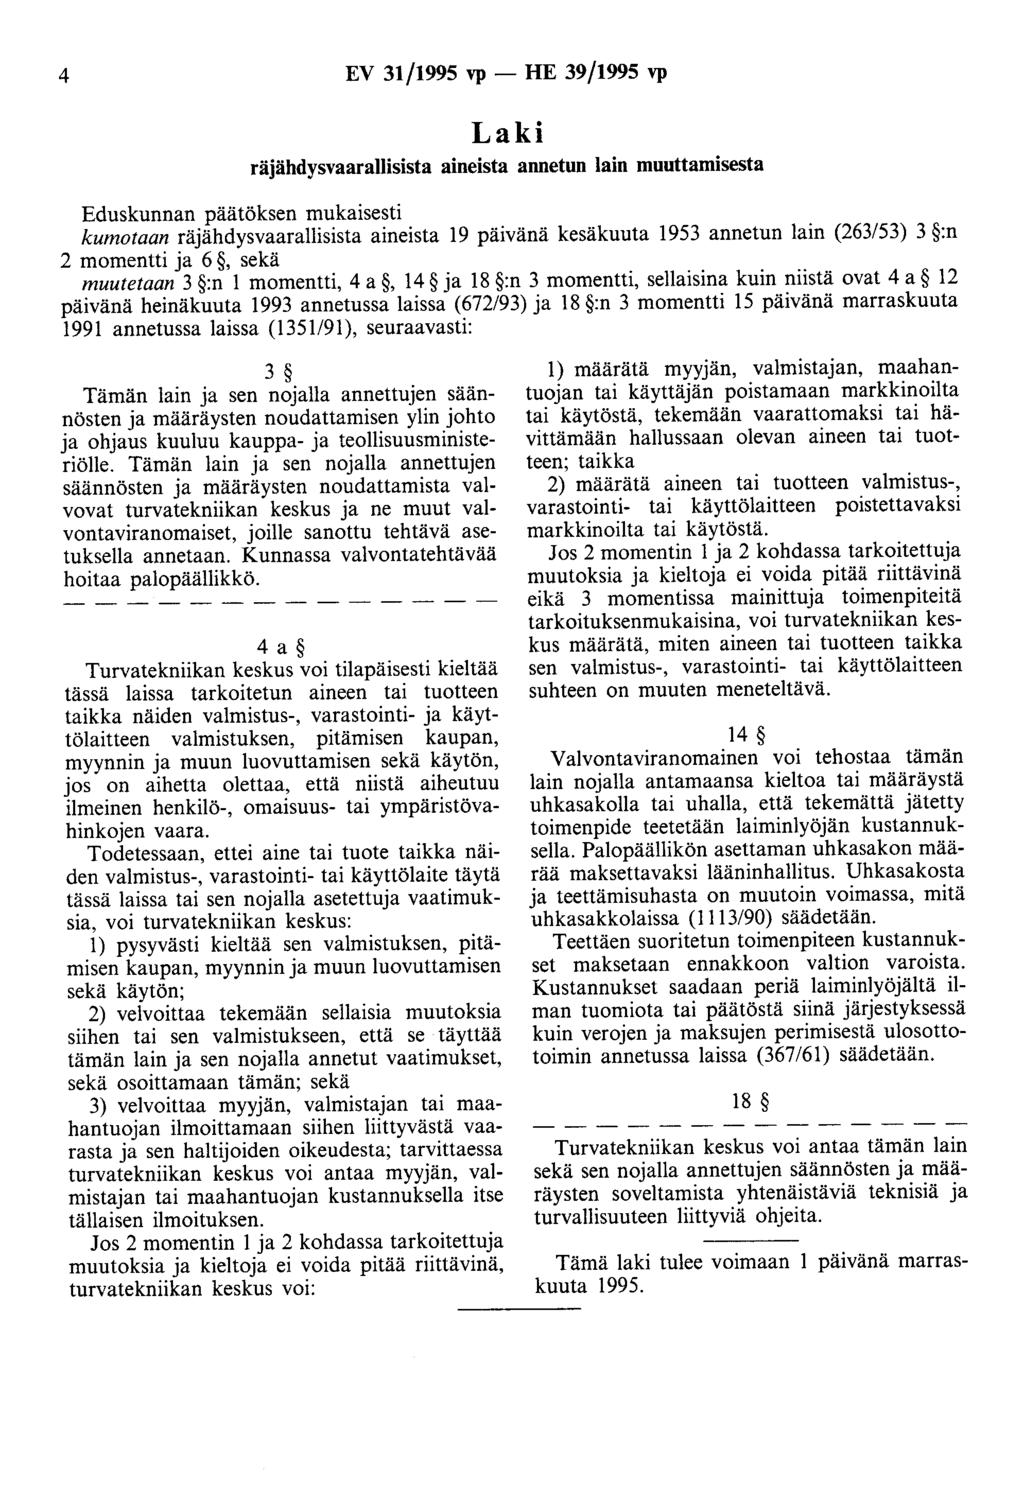 4 EV 31/1995 vp- HE 39/1995 vp räjähdysvaarallisista aineista annetun lain muuttamisesta kumotaan räjähdysvaarallisista aineista 19 päivänä kesäkuuta 1953 annetun lain (263/53) 3 :n 2 momentti ja 6,